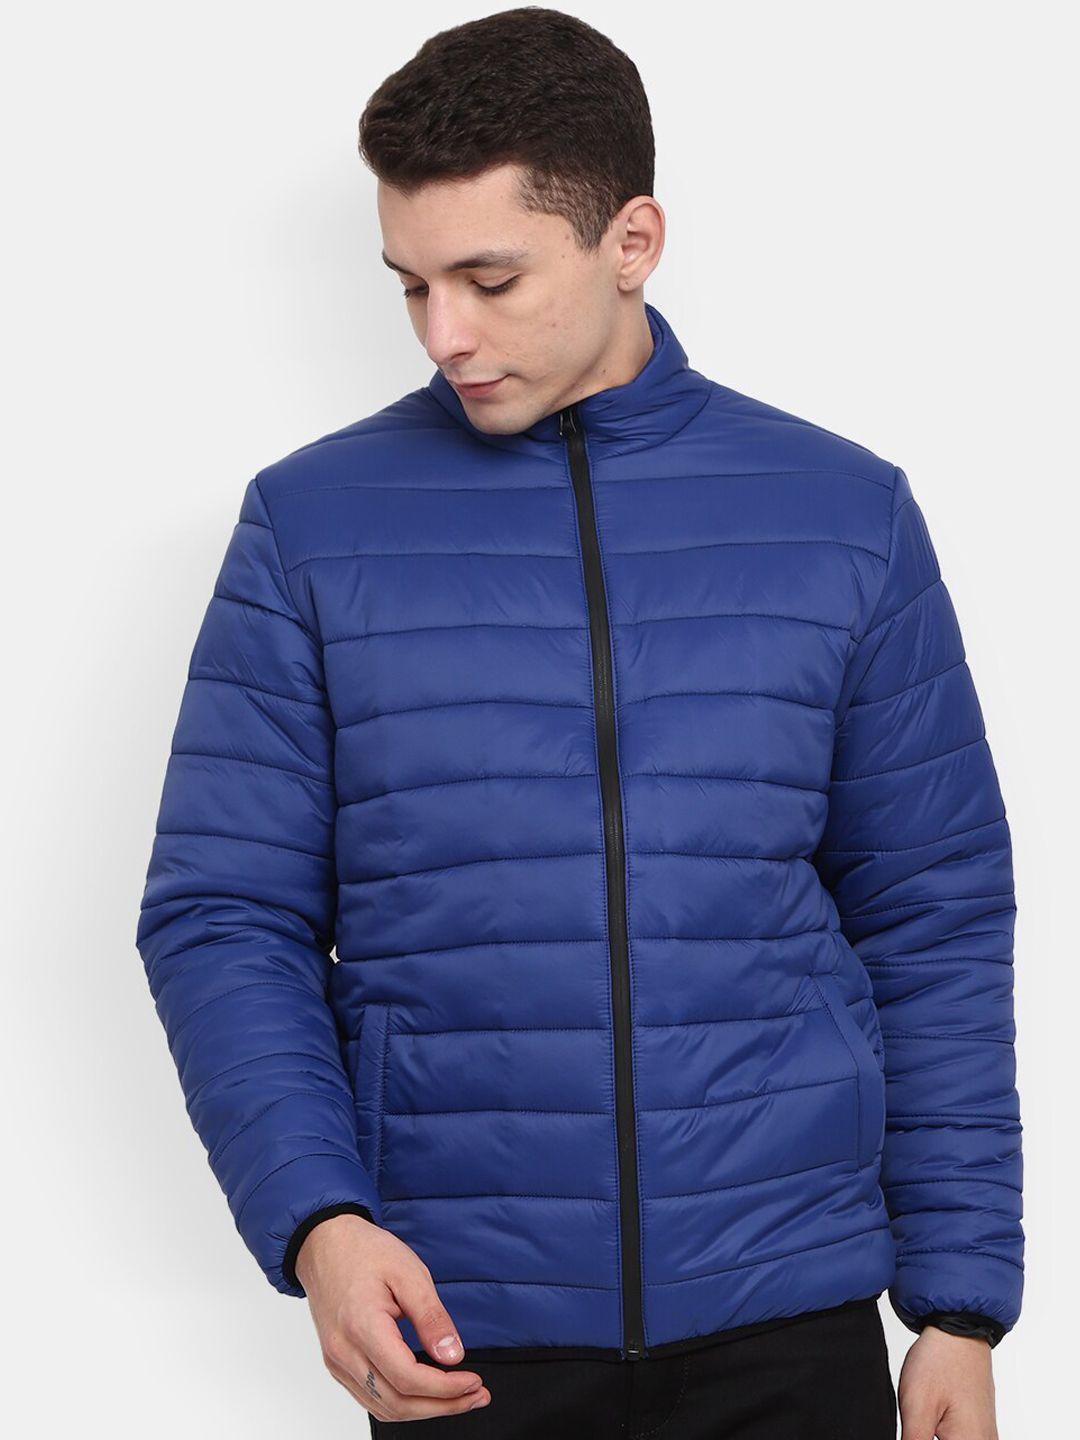 v-mart men blue lightweight quilted jacket